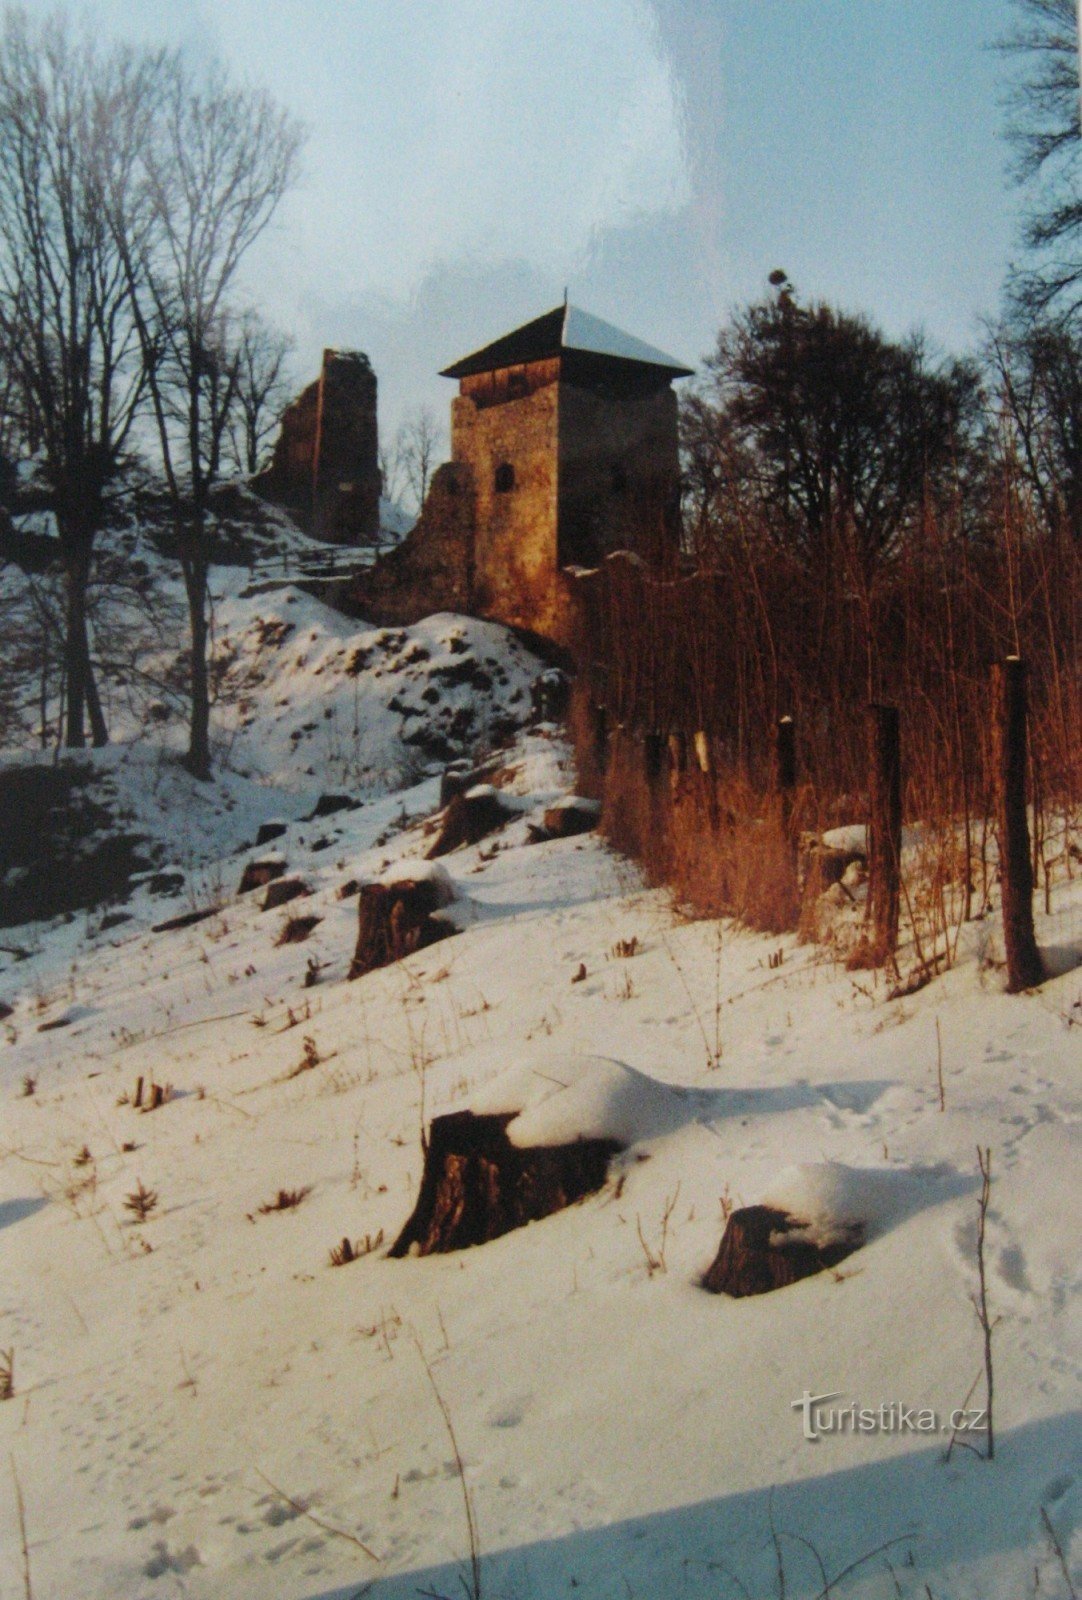 ルコヴォ城のワラキアの冬